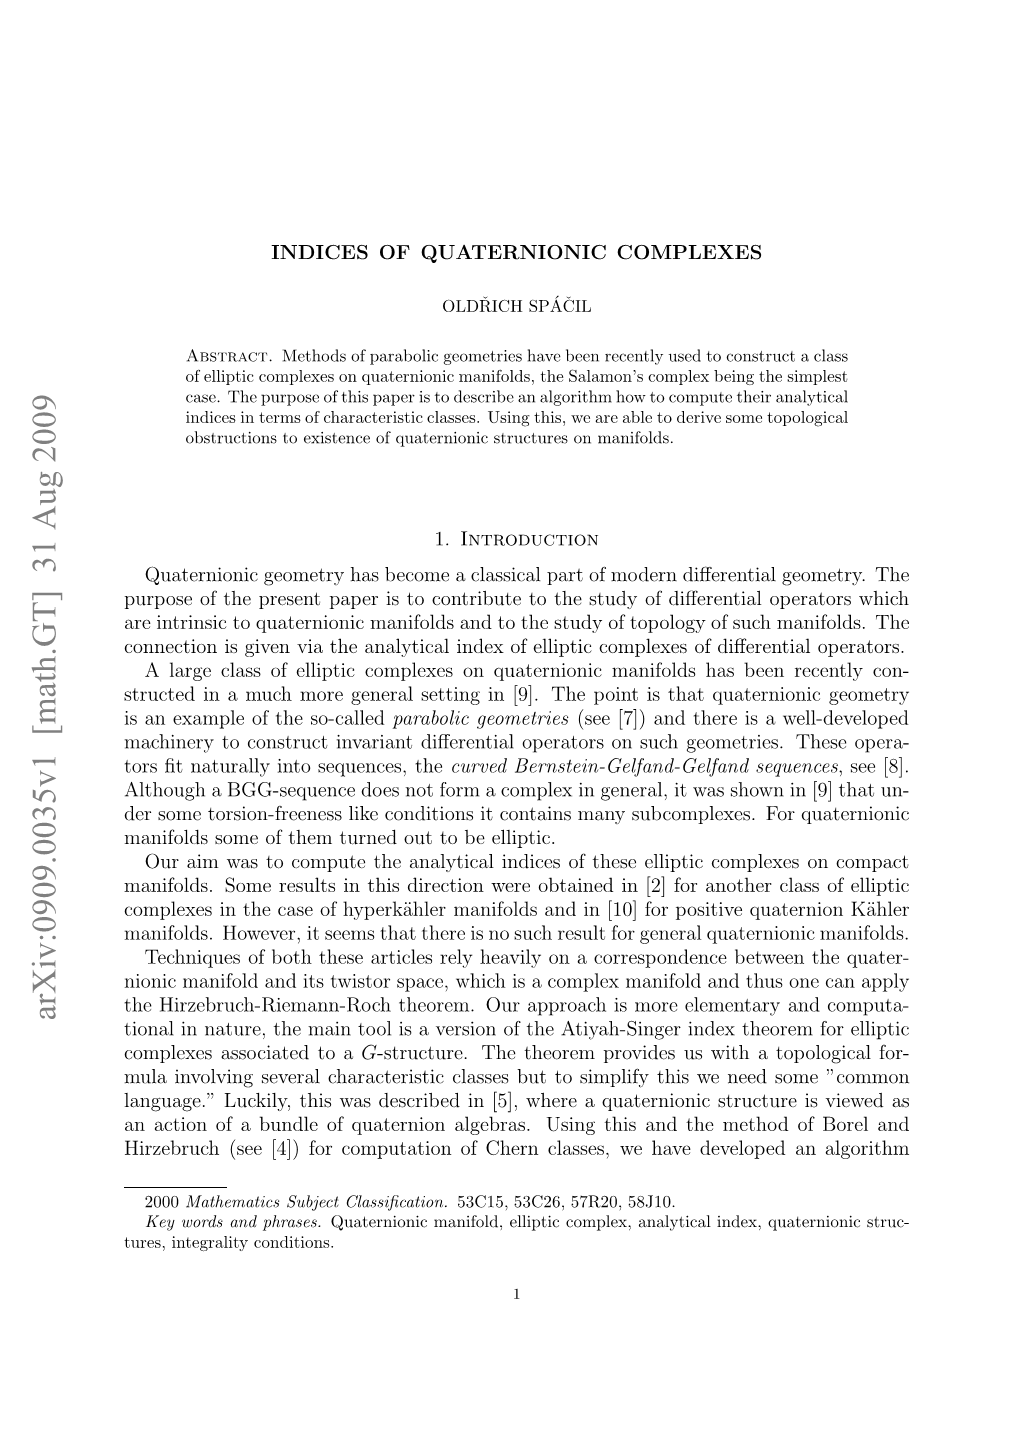 Indices of Quaternionic Complexes